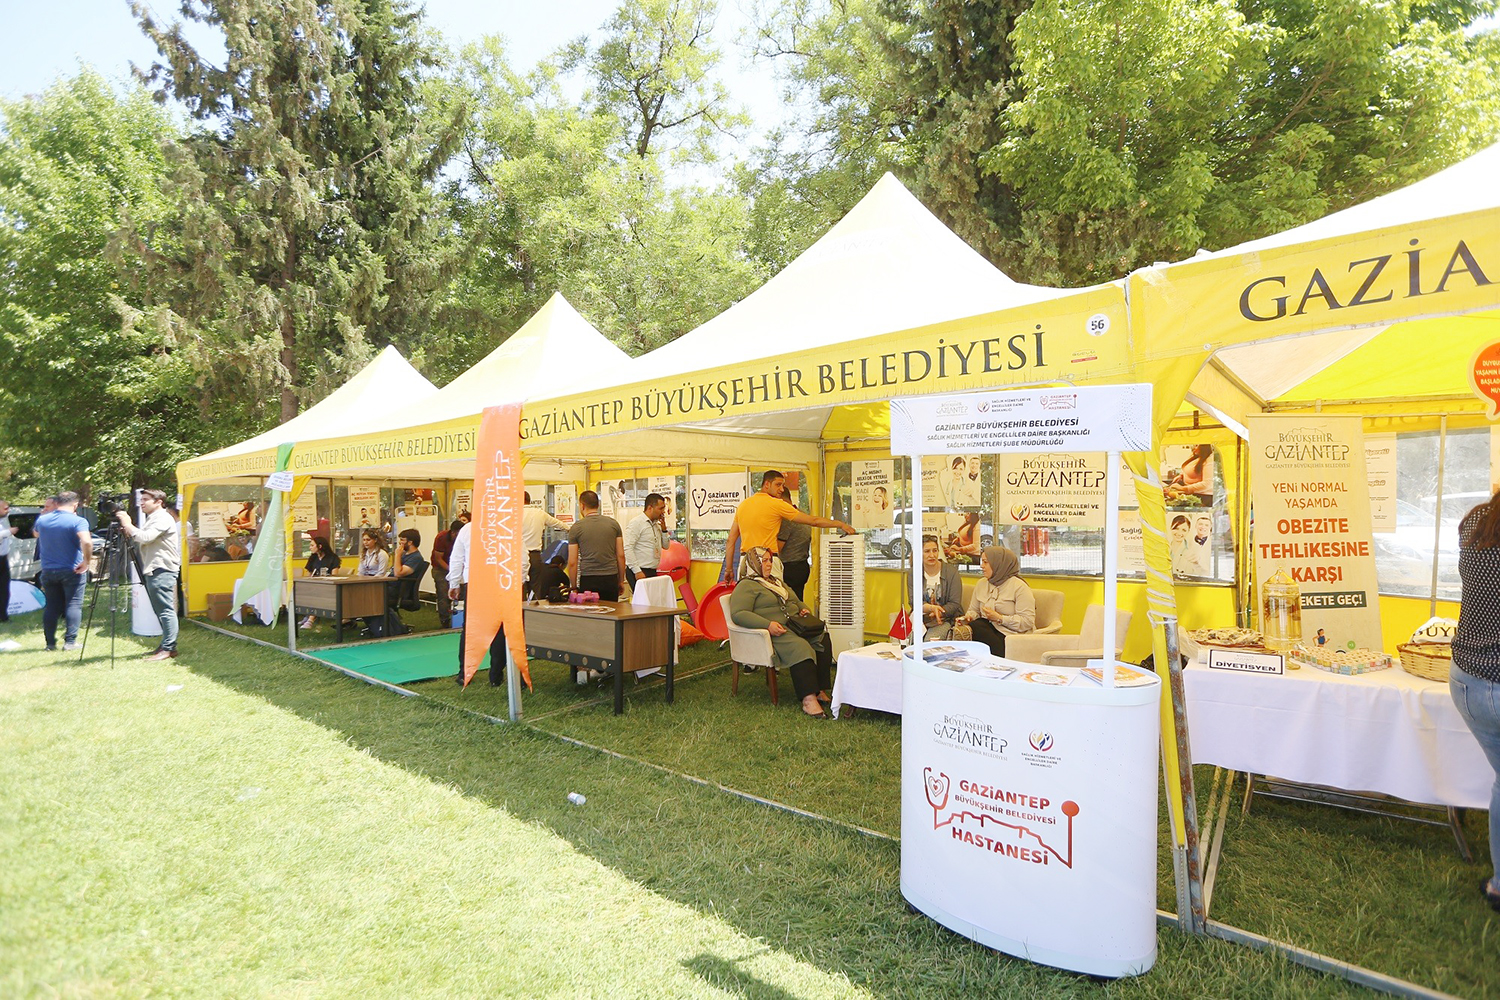 Gaziantep’te “obezite” temalı sağlıklı yaşam festivali